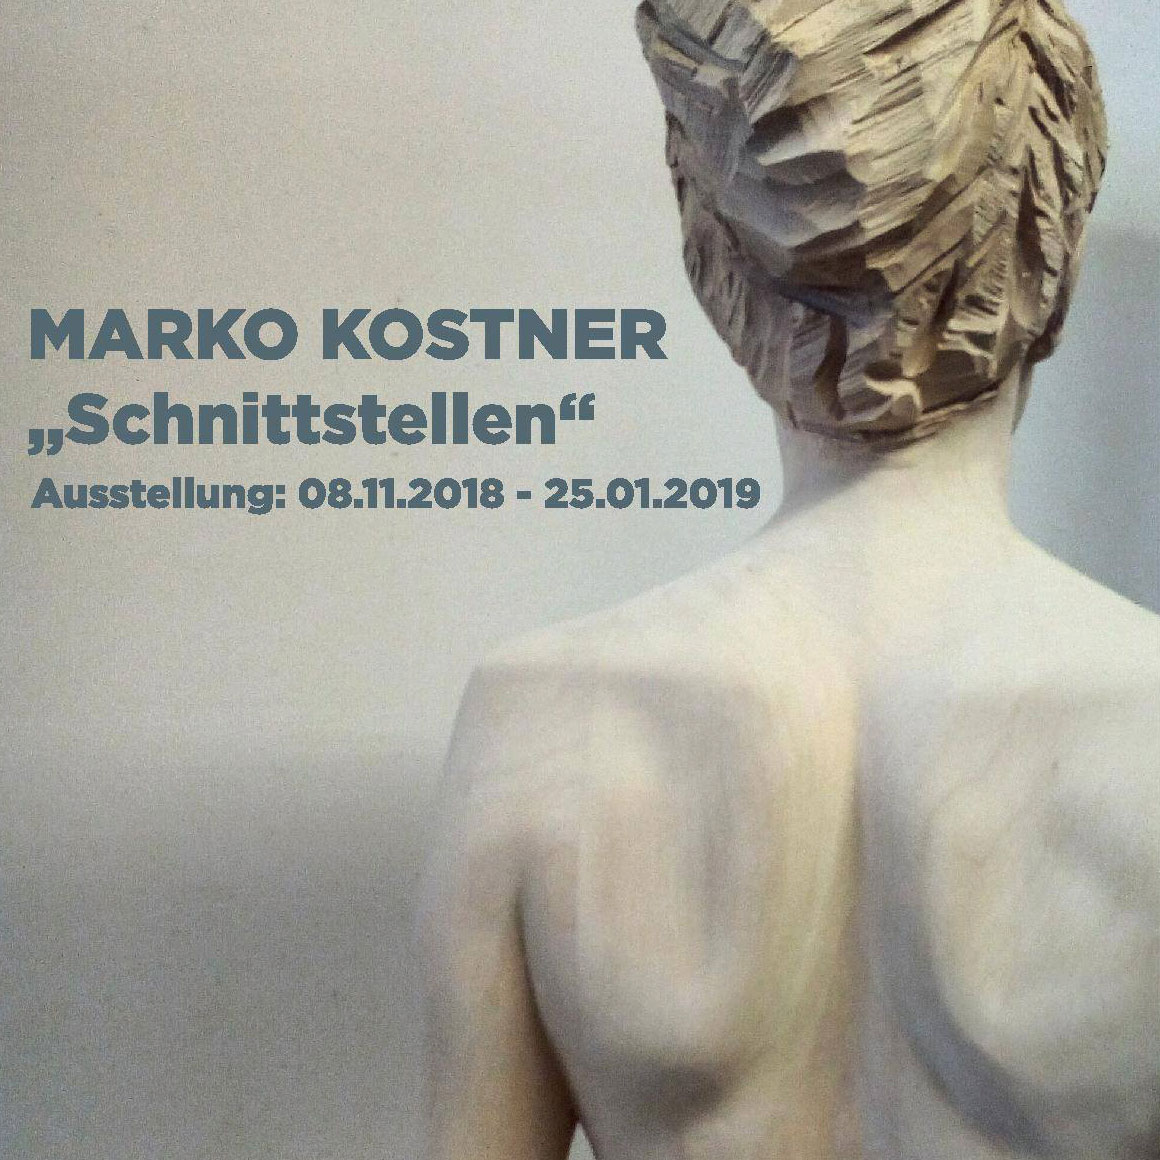 Bildhauer Marko Kostner - Auststellung Schnittstellen